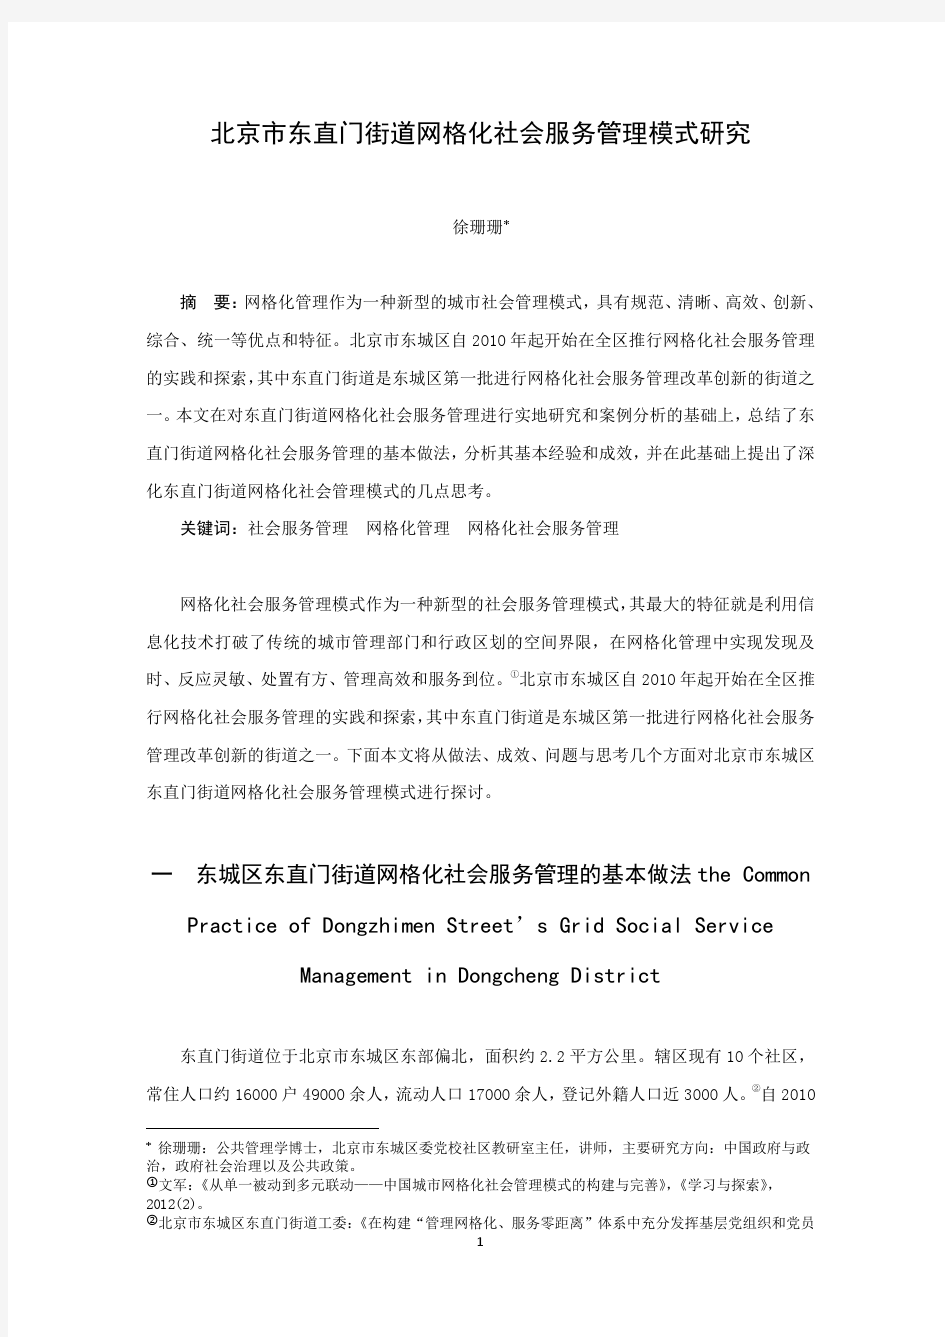 4北京市东直门街道网格化社会服务管理模式研究